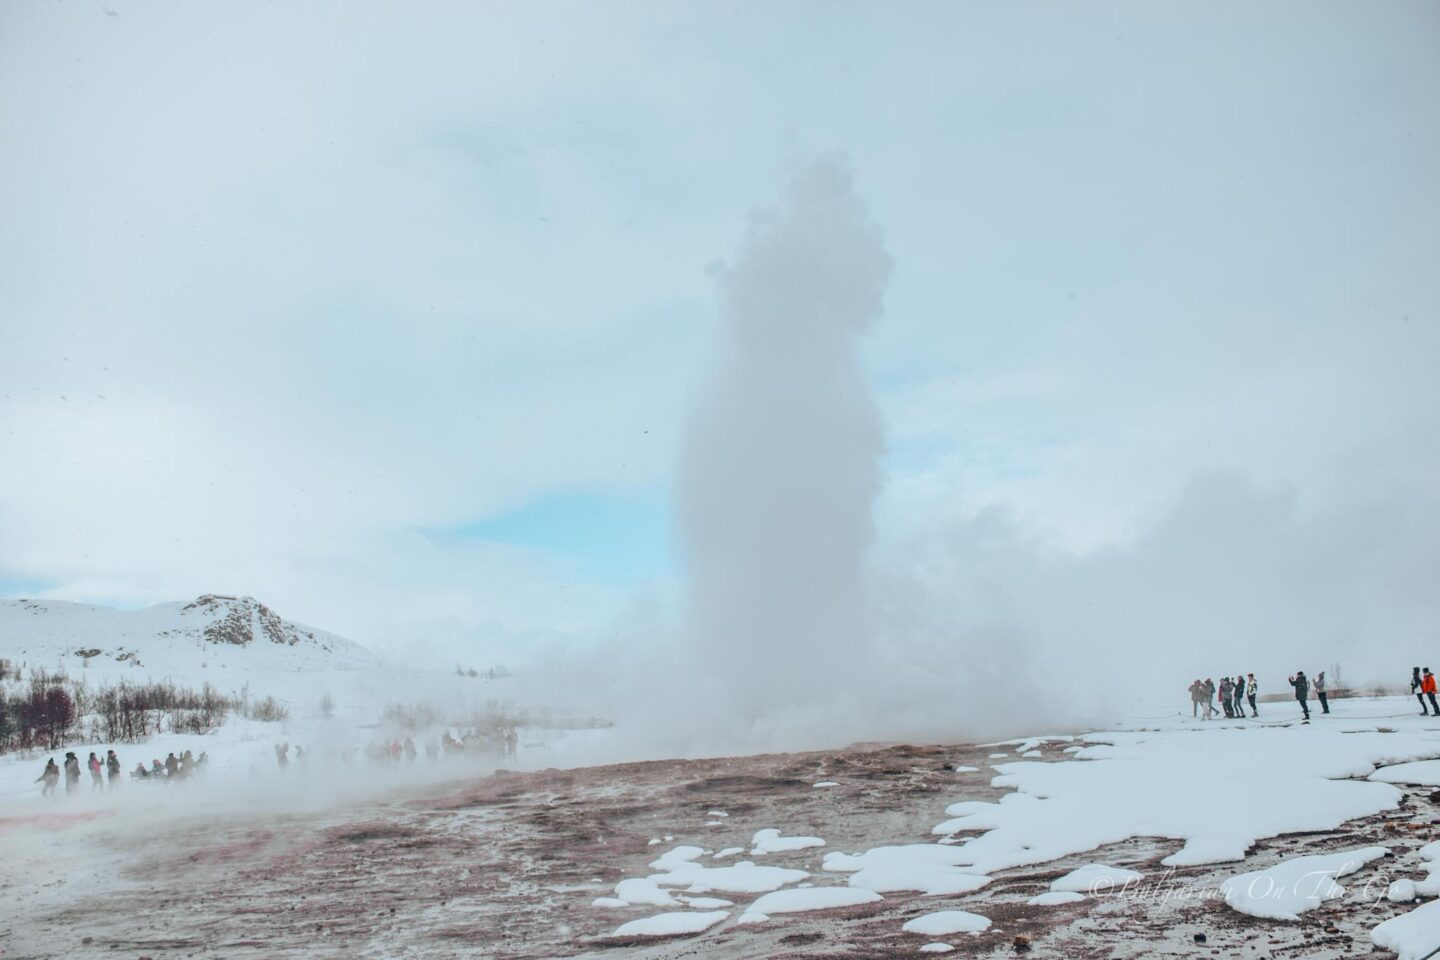 Strokkur geyser errupting in Iceland